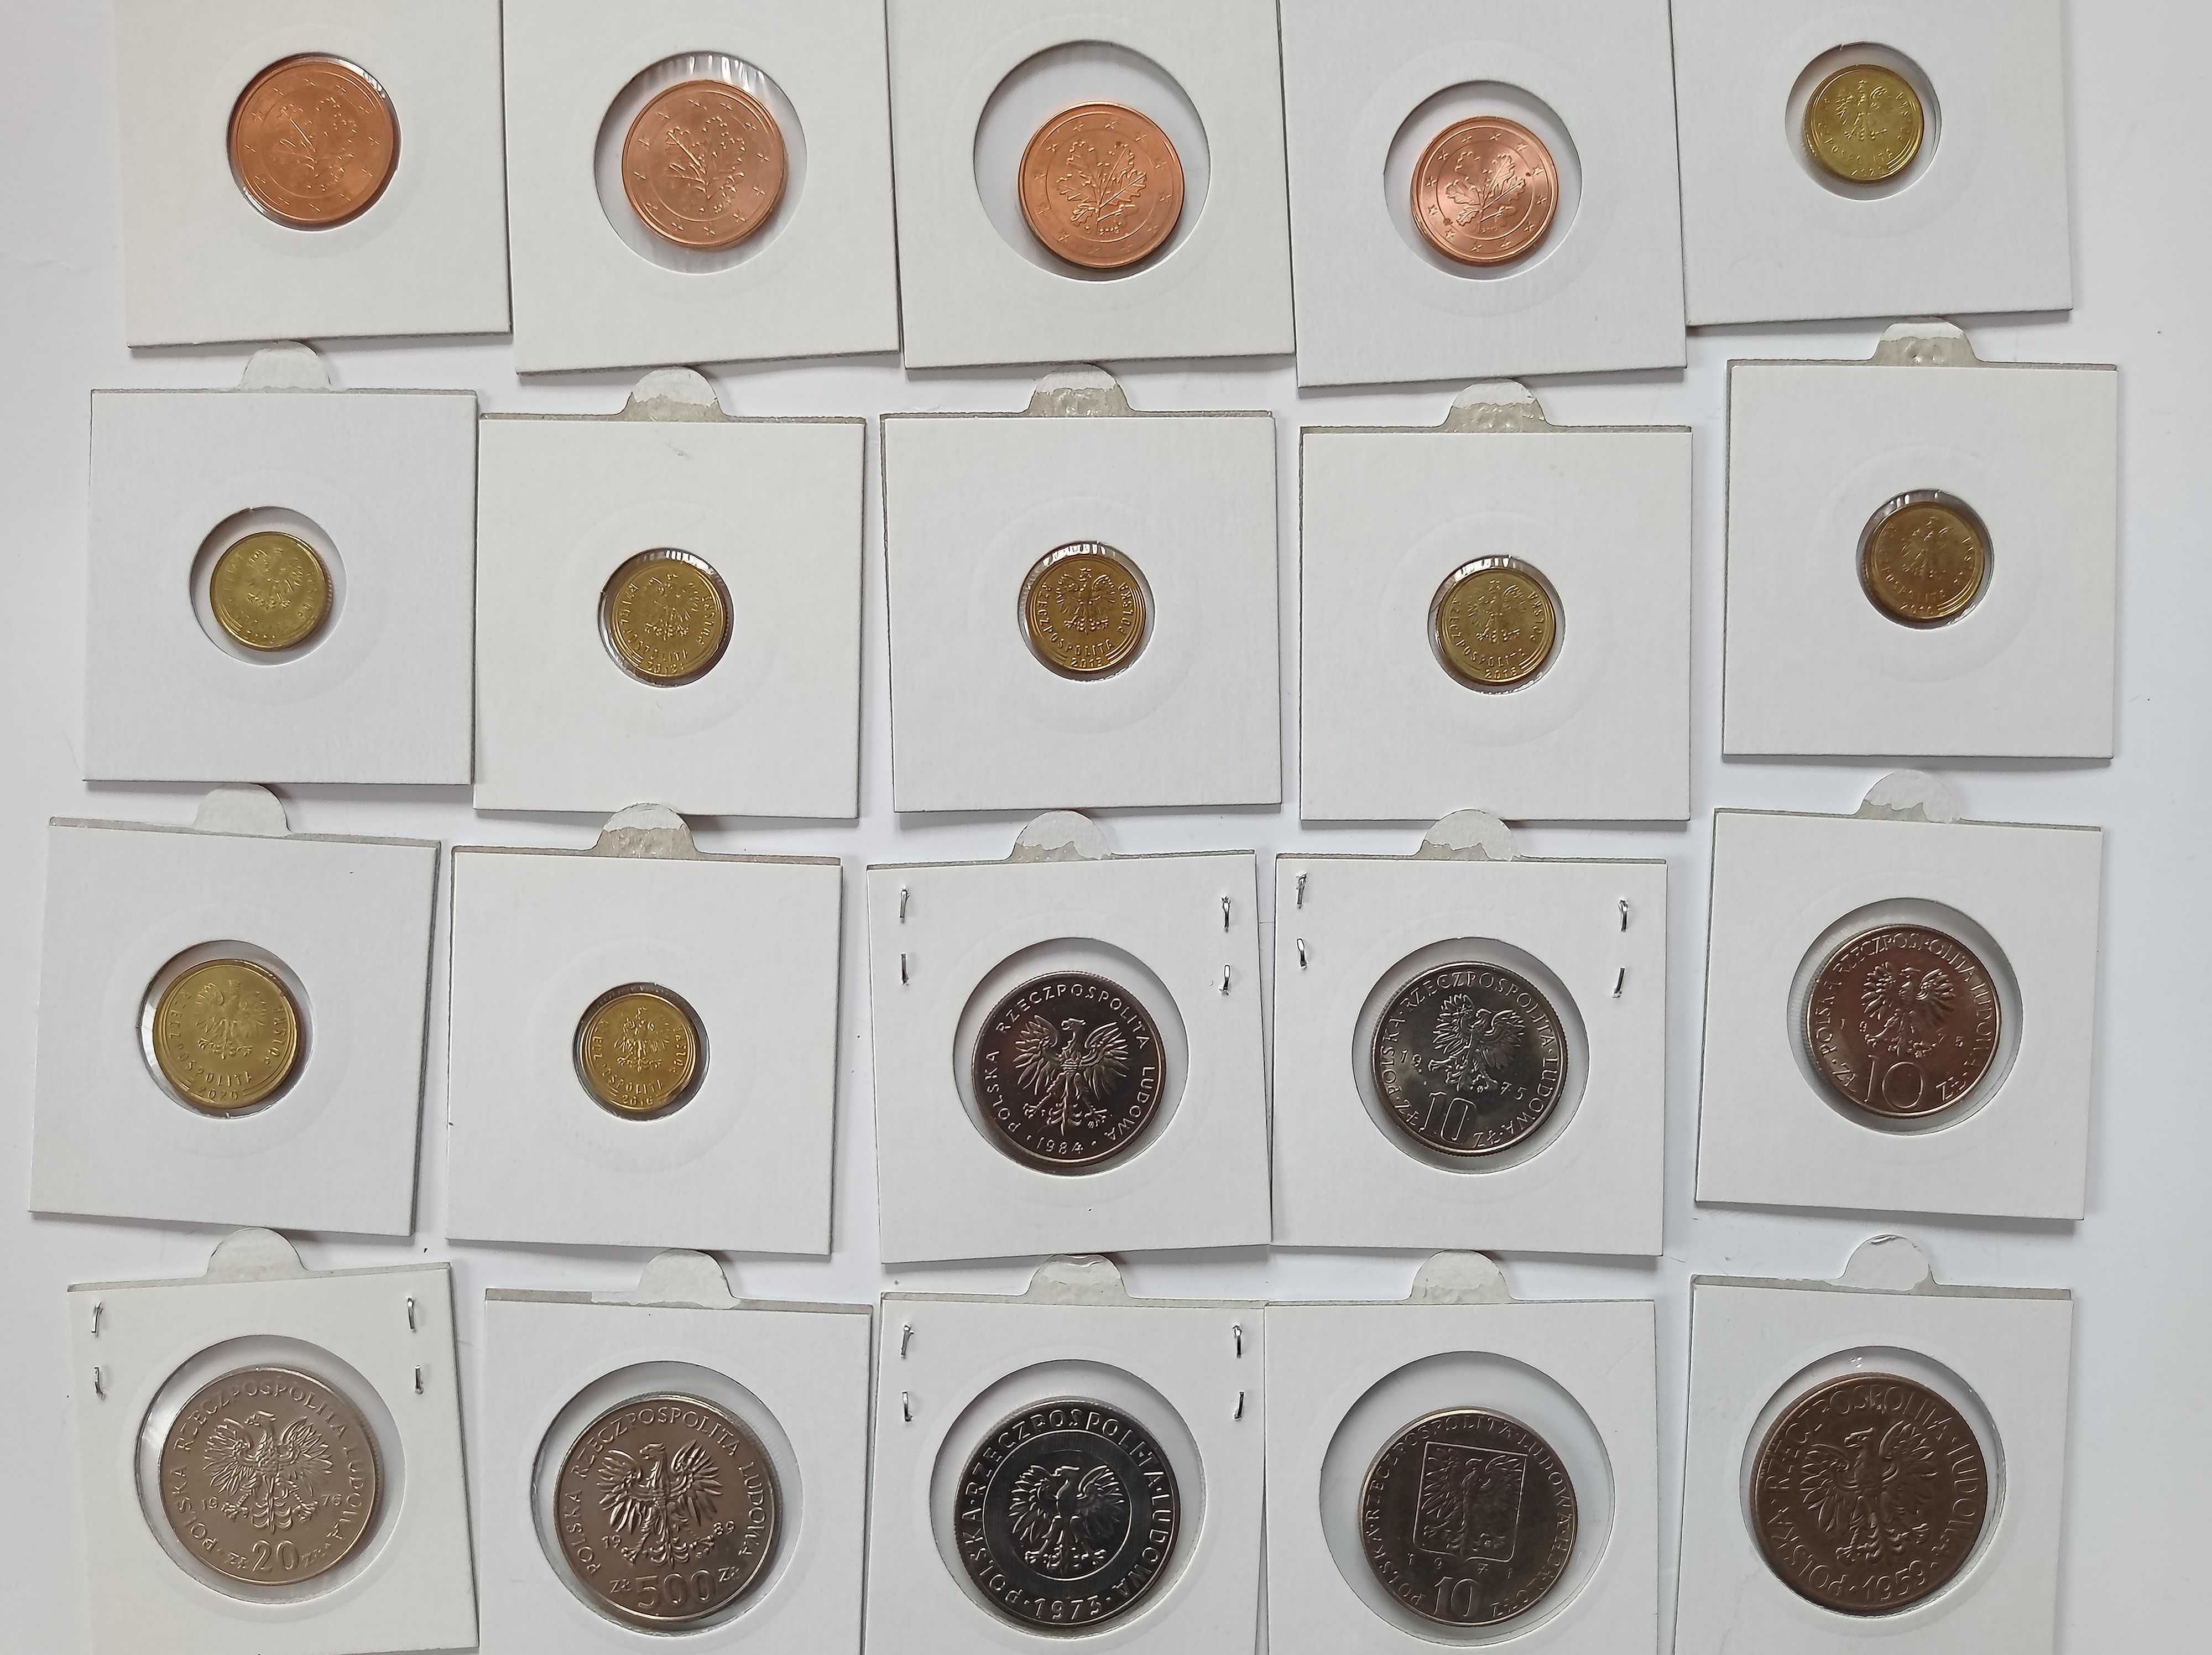 Stare monety UNC - Polska + eurocenty